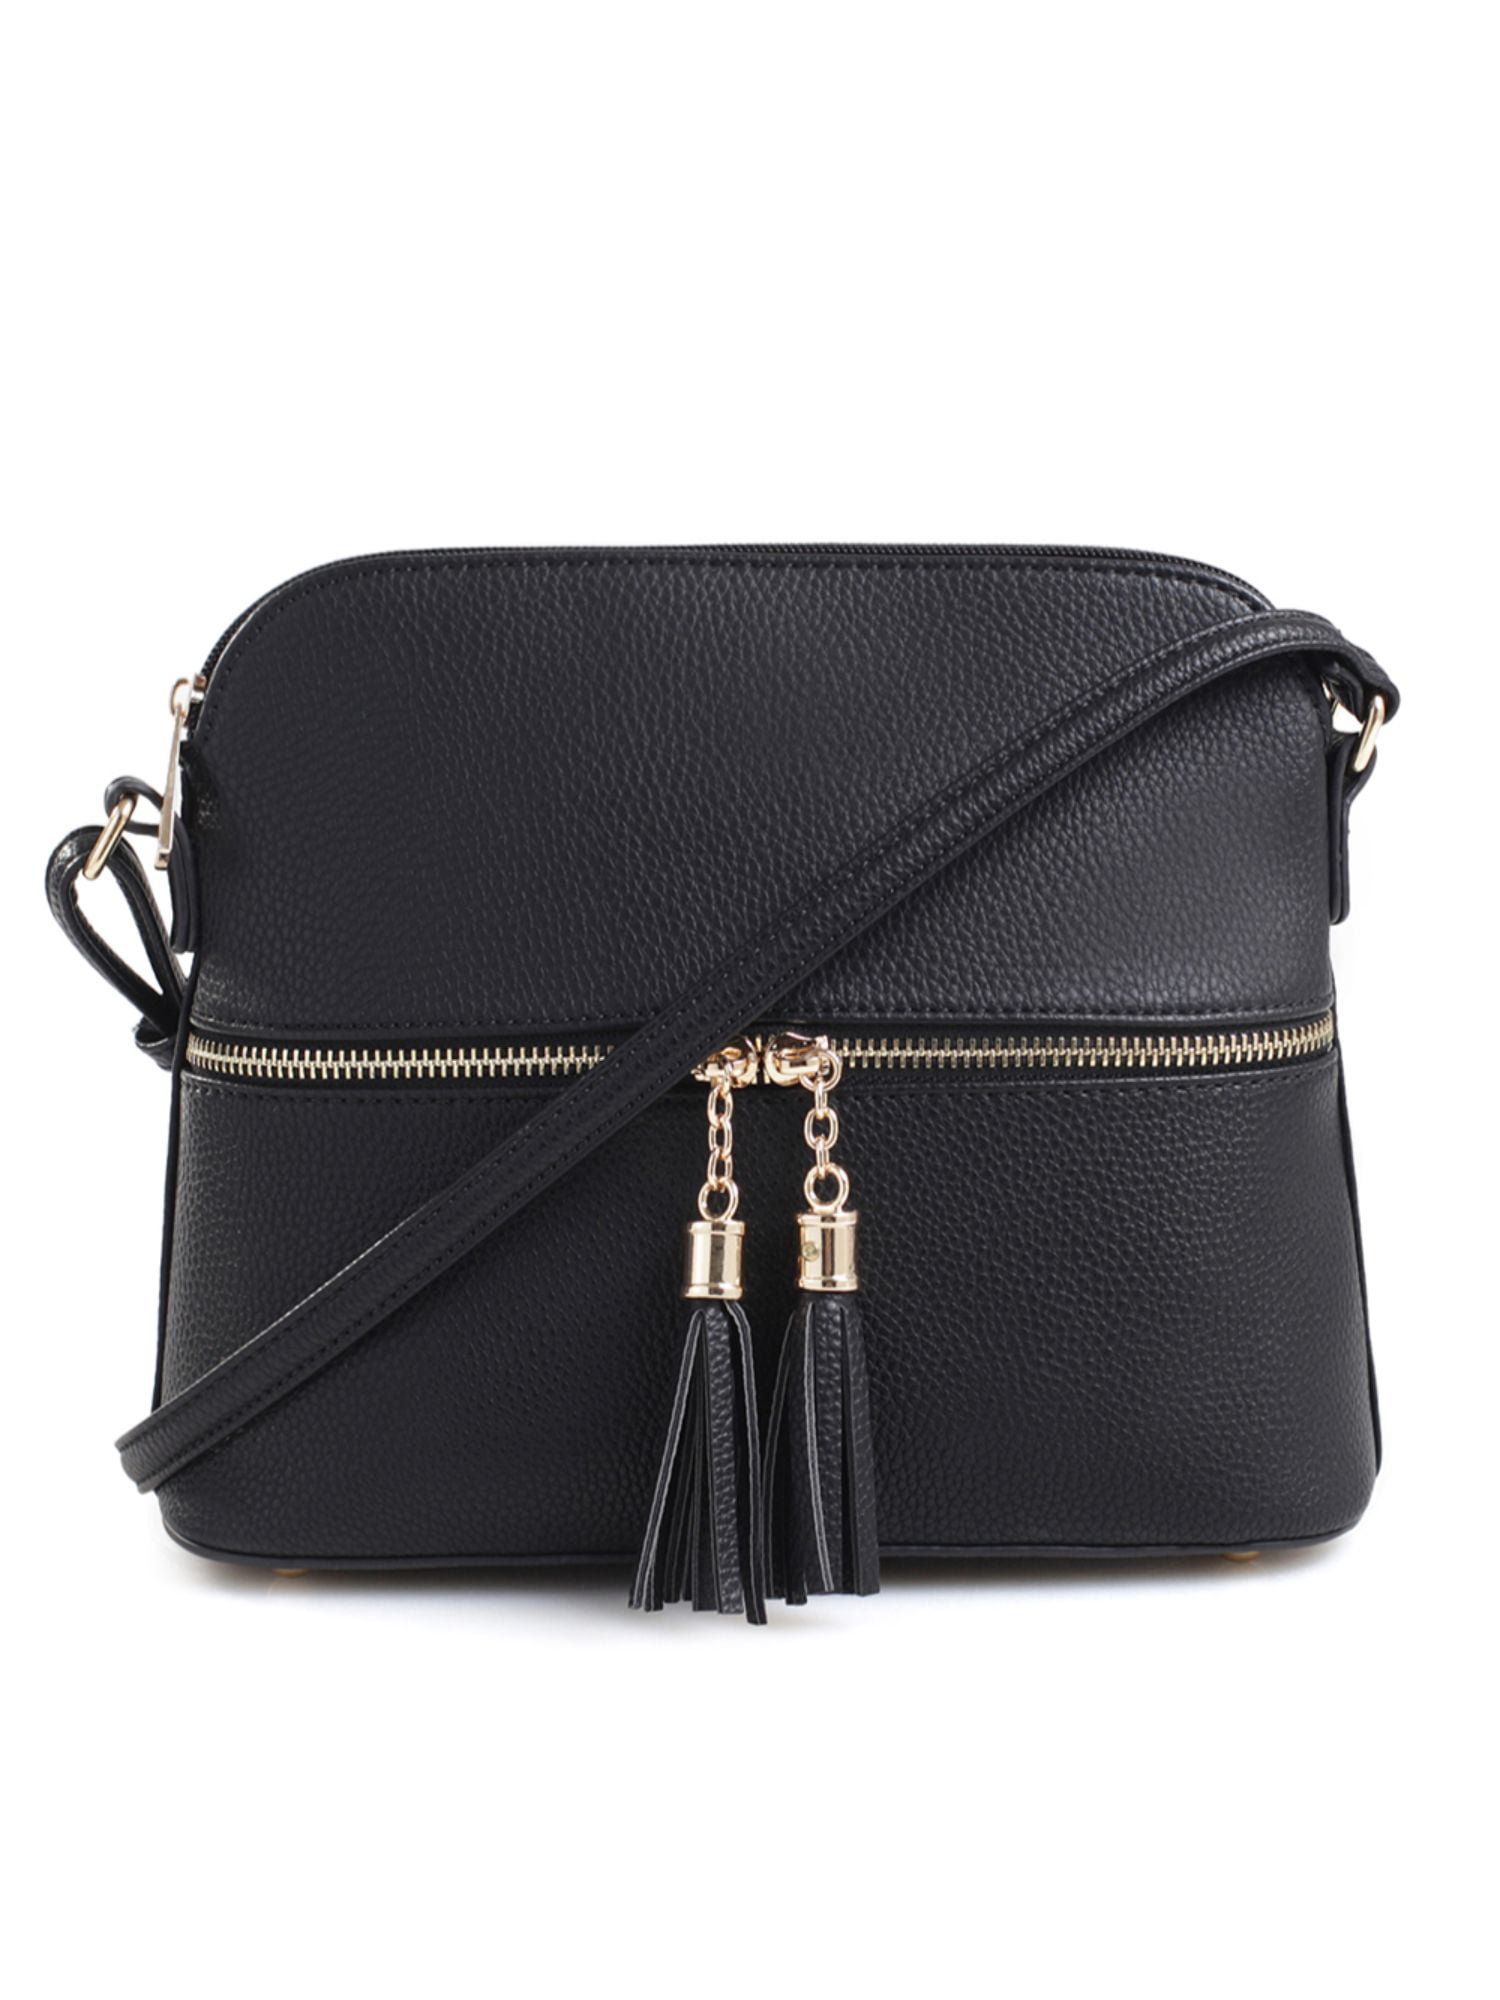 Lightweight Medium Dome Crossbody Bag Shoulder Bag with Tassel, Zipper  Pocket, Adjustable Strap- Blue